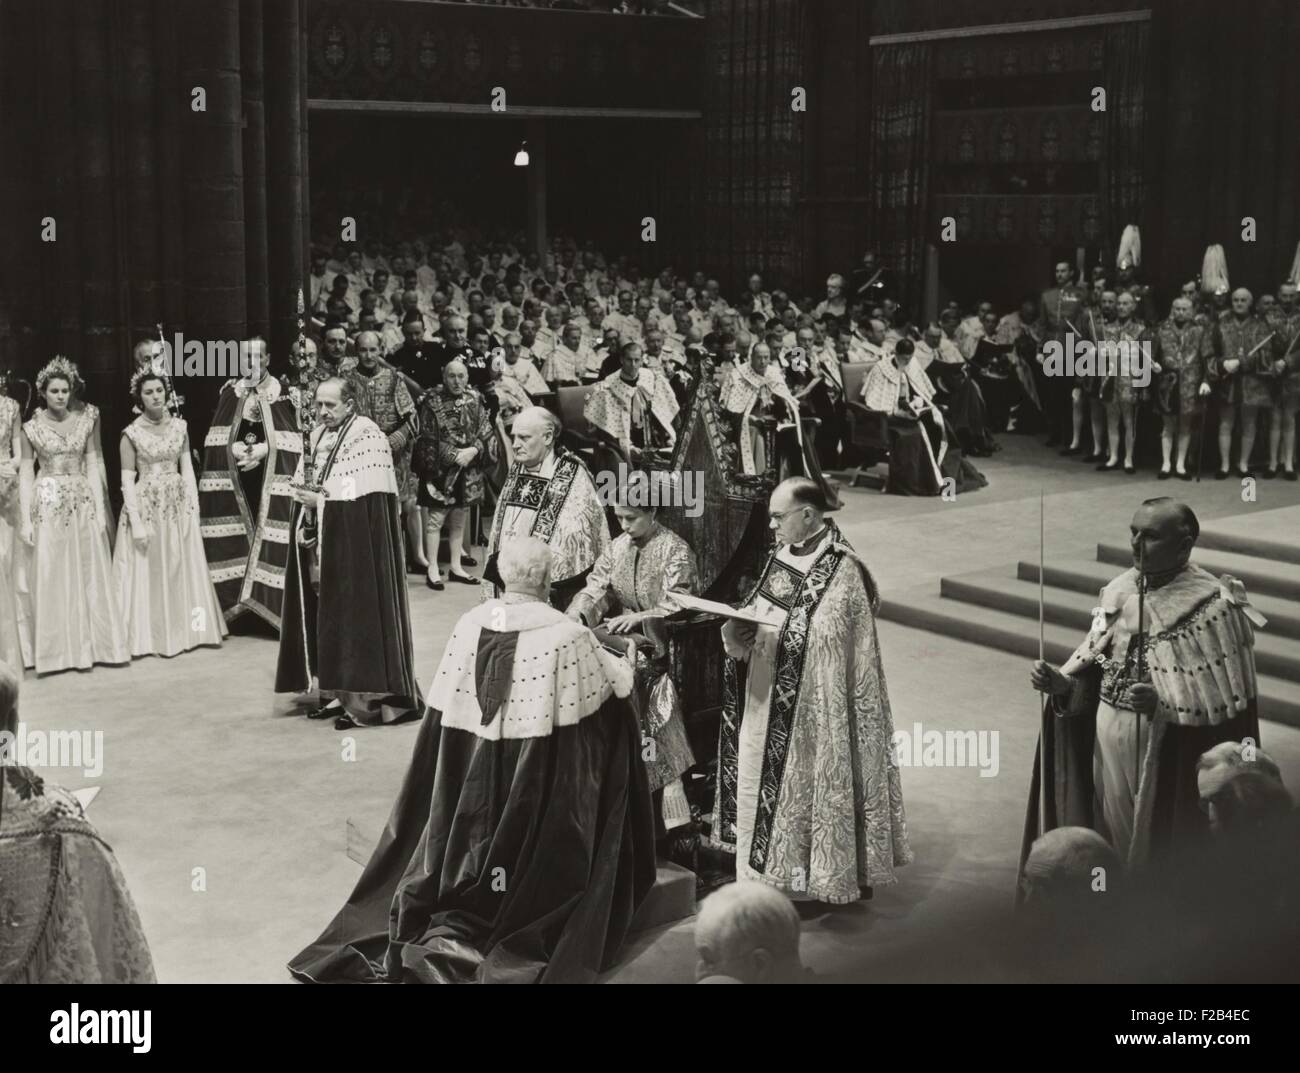 Krönung von Königin Elizabeth II, 2. Juni 1953. Sie empfängt die Sporen der Ritterlichkeit von Lord Great Chamberlain. -(BSLOC 2015 1 46) Stockfoto